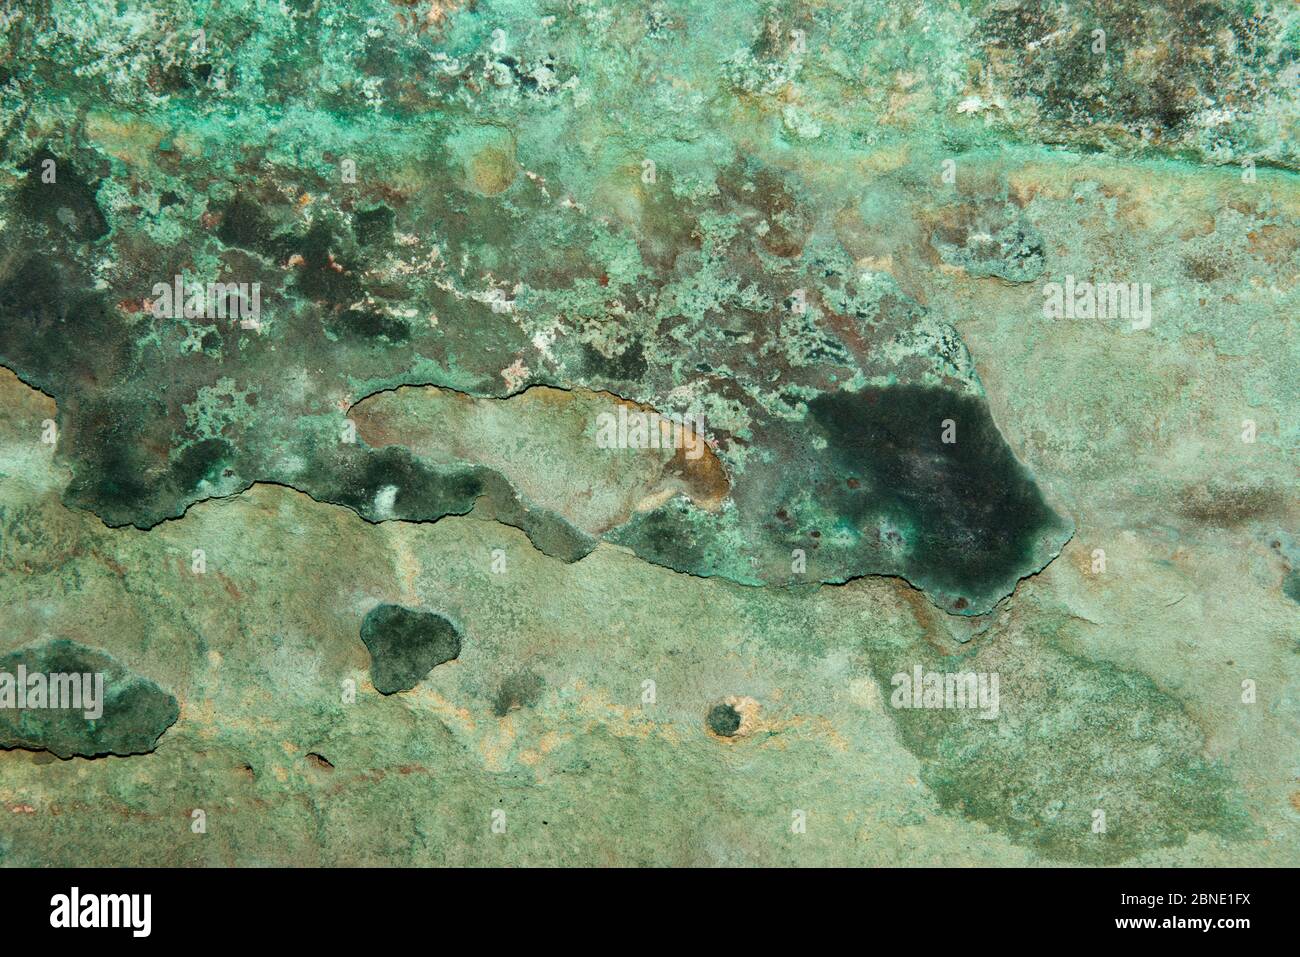 Roccia macchiata di rame causata dalla mineralizzazione che forma la malachite, pietra arenaria Grinshill, formazione triassica di pietra arenaria New Red, circa 250 milioni di anni Foto Stock